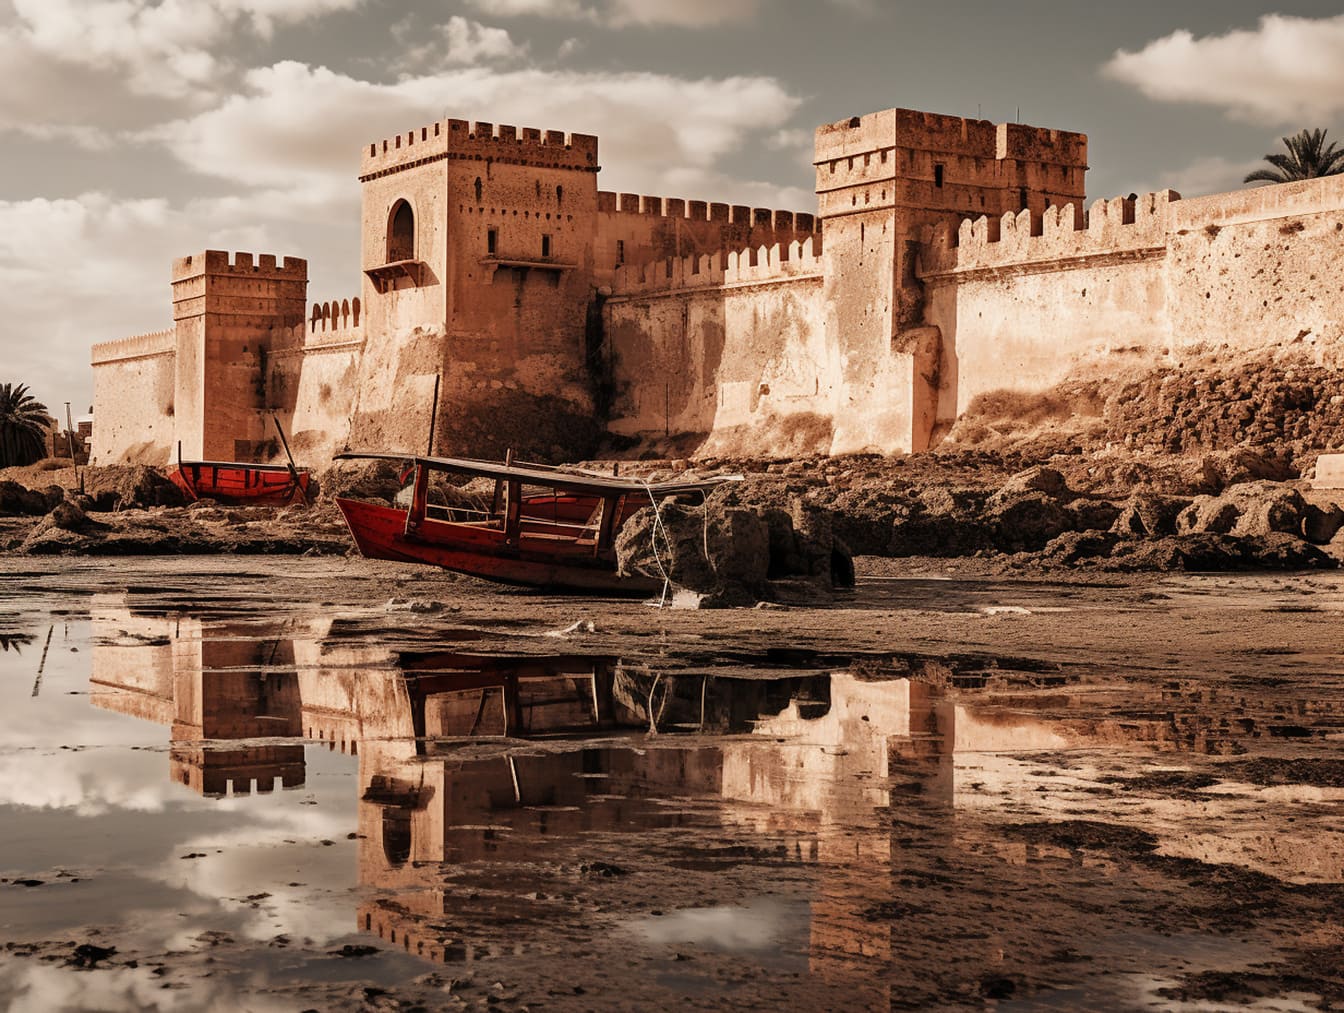 Middeleeuws kasteel met een grote wal en boot in de rivierbedding in het droogteseizoen